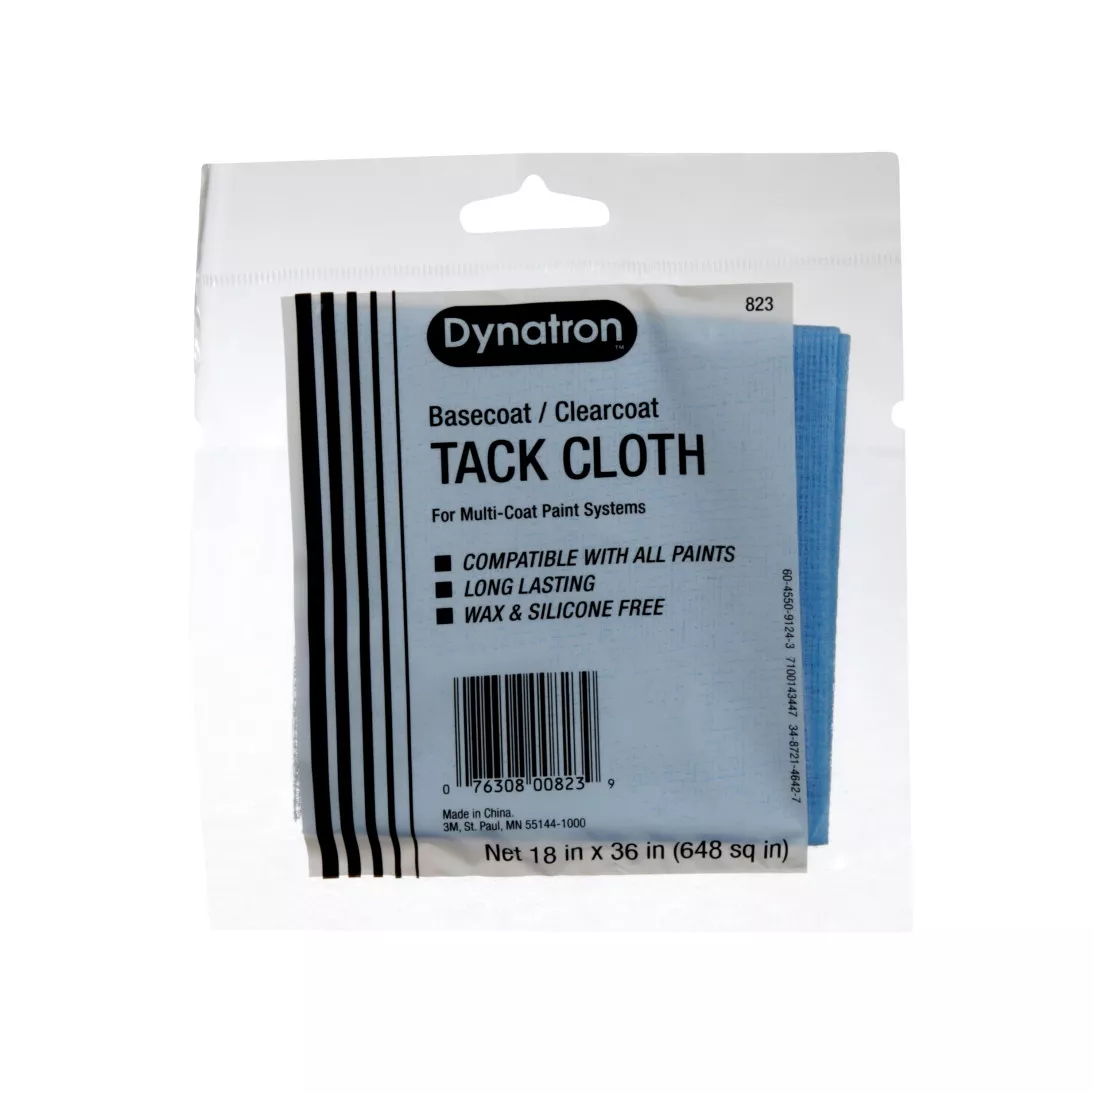 Dynatron™ Blue Tack Cloth, 00823, 12 tack cloths per carton, 12 cartons per case